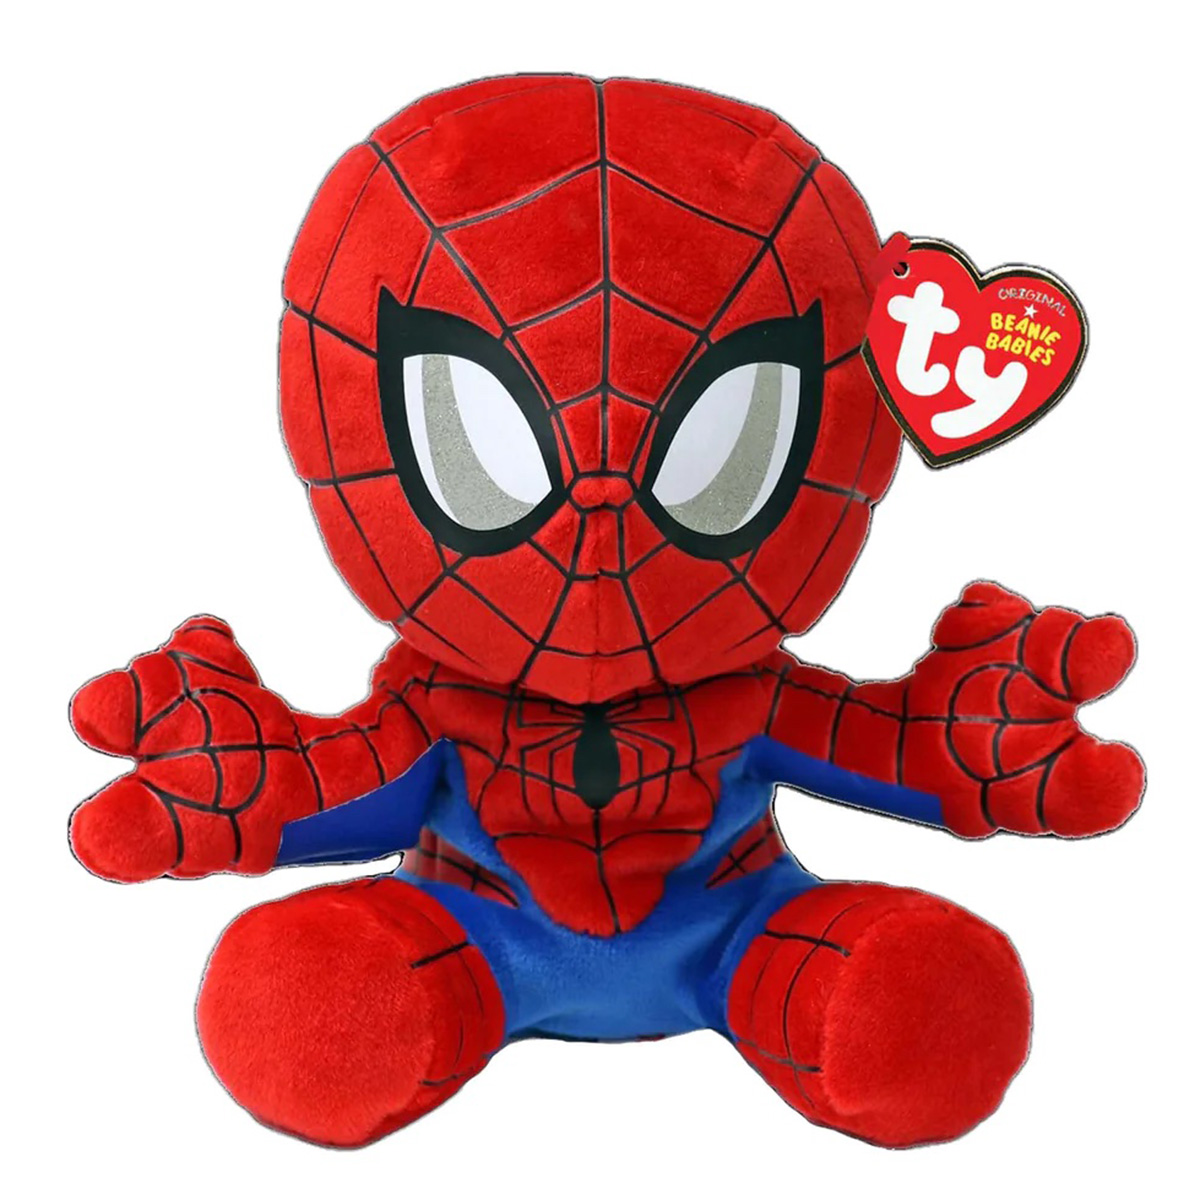 Ty Original Beanie Babies Spider-Man Plush